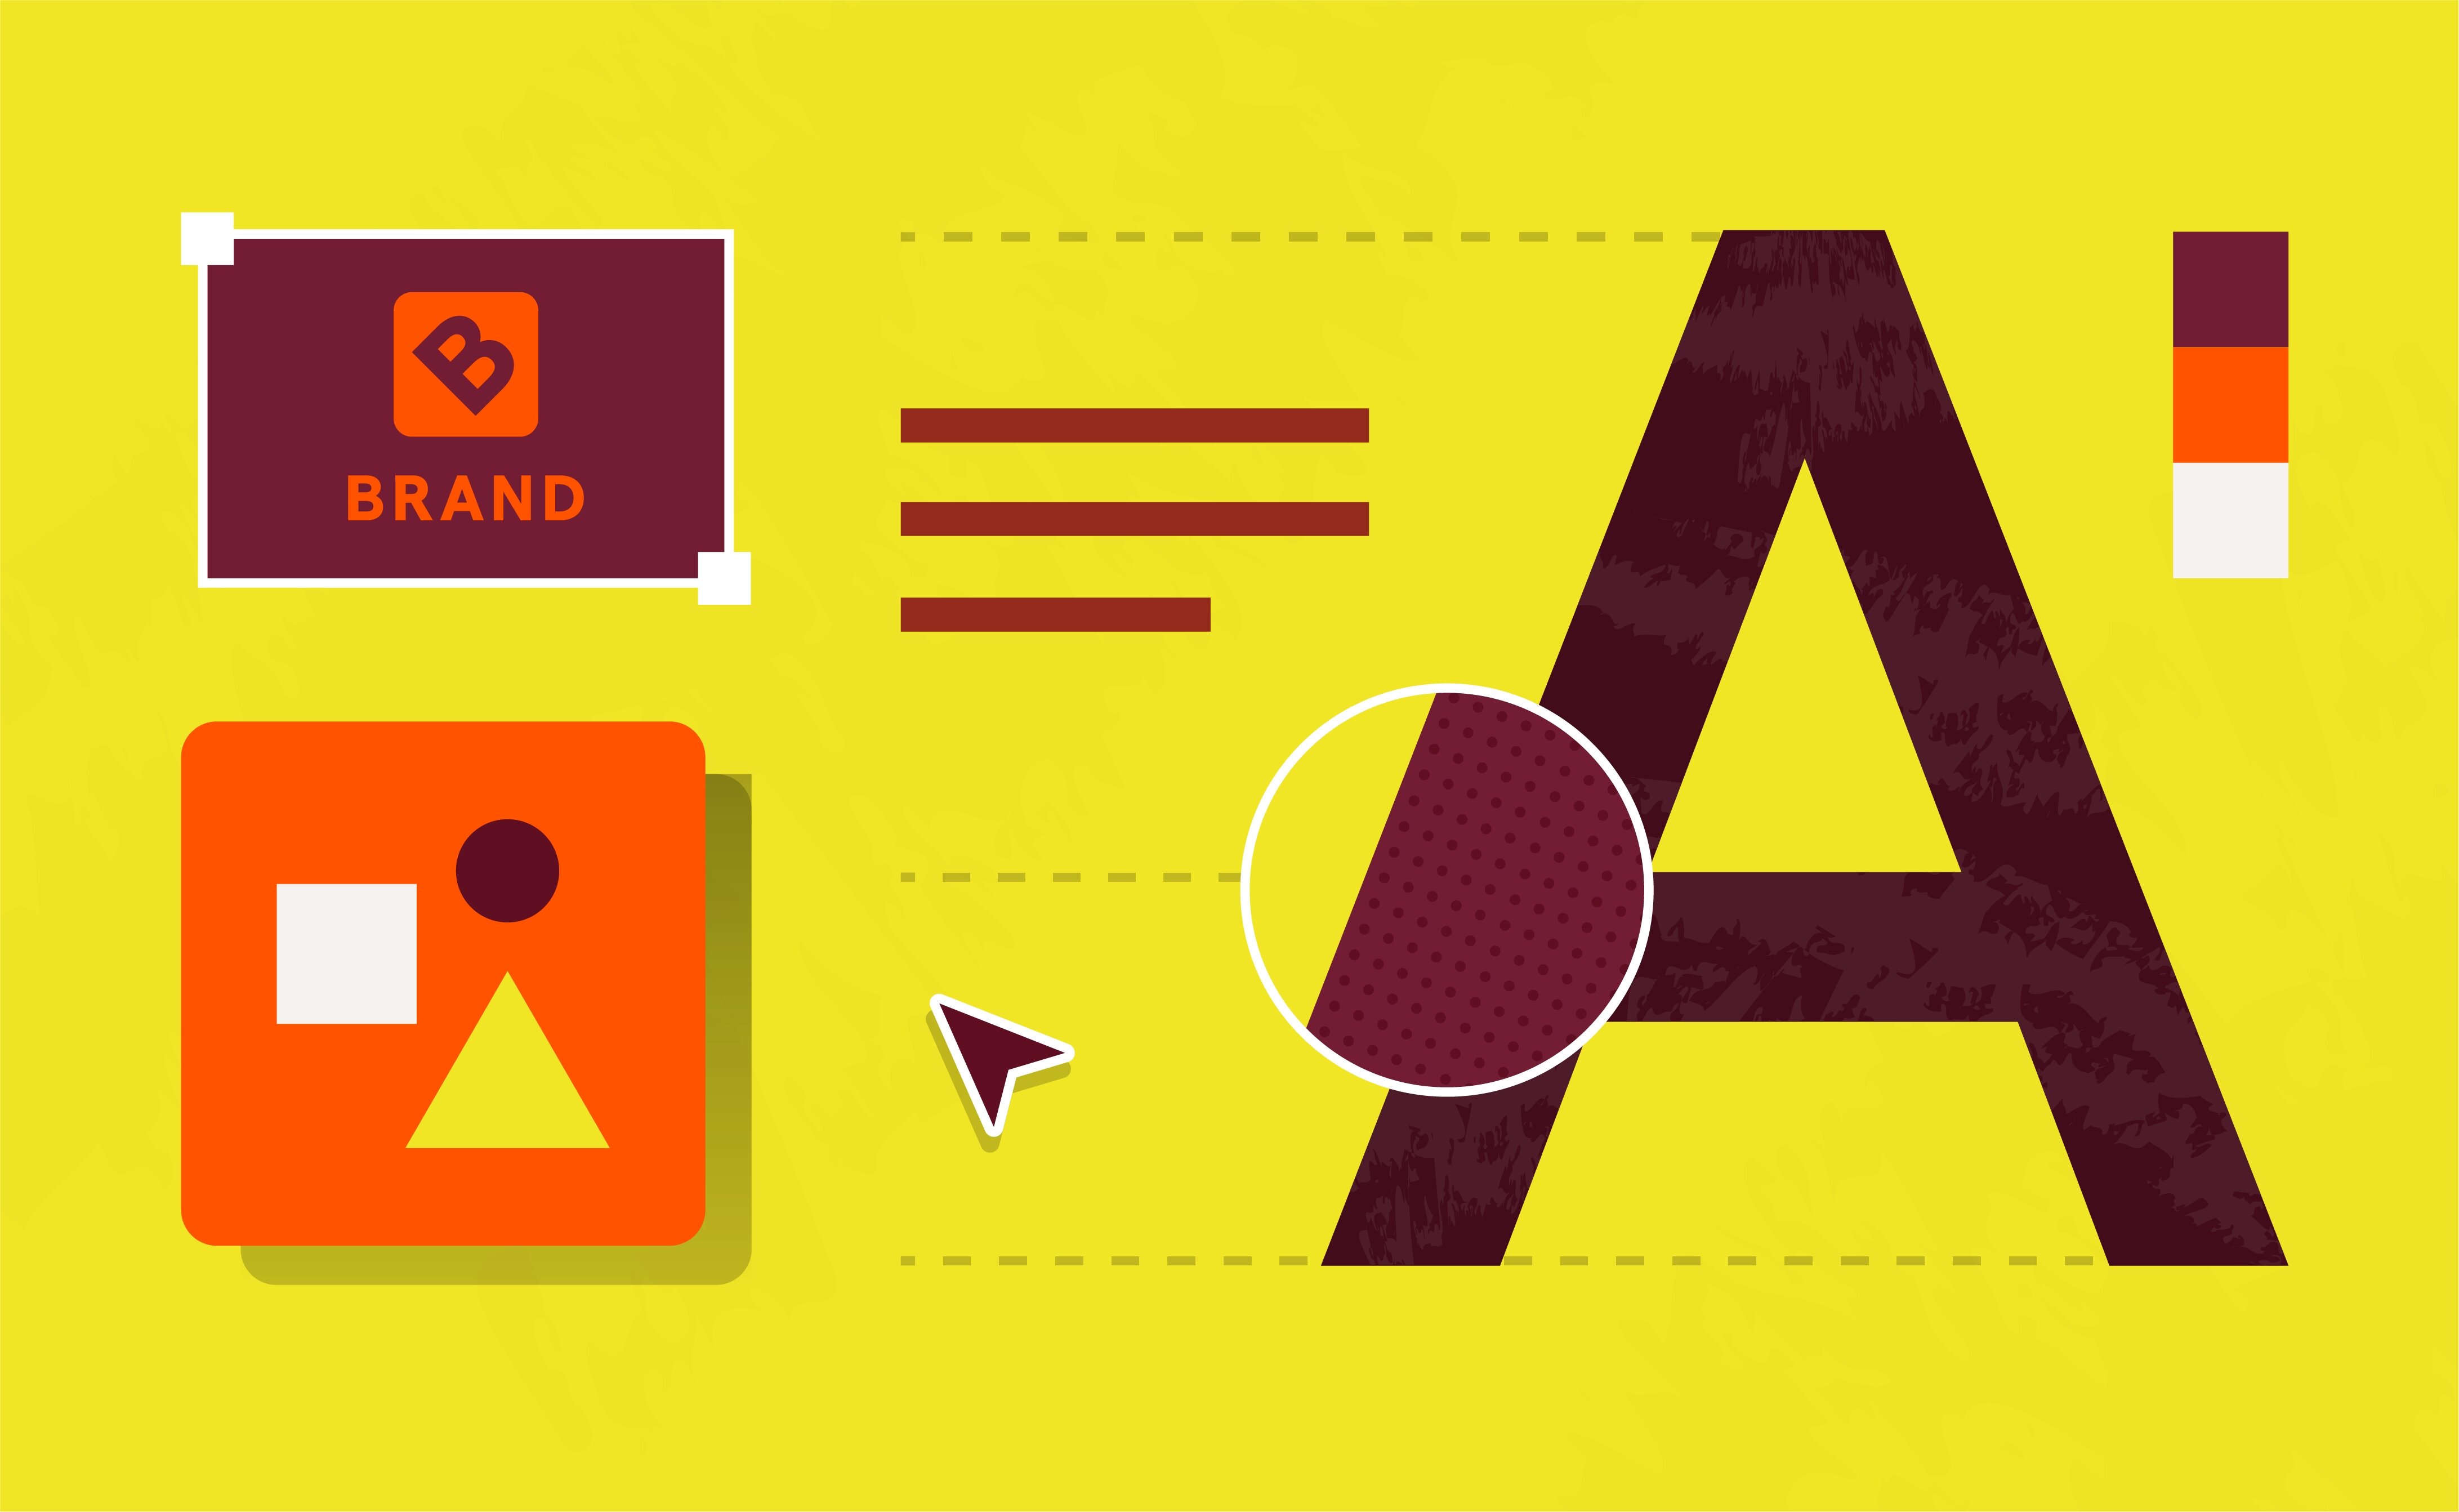 Ilustracja z przykładowymi elementami brandingu – logo, typografią, paletą kolorów i ikoną